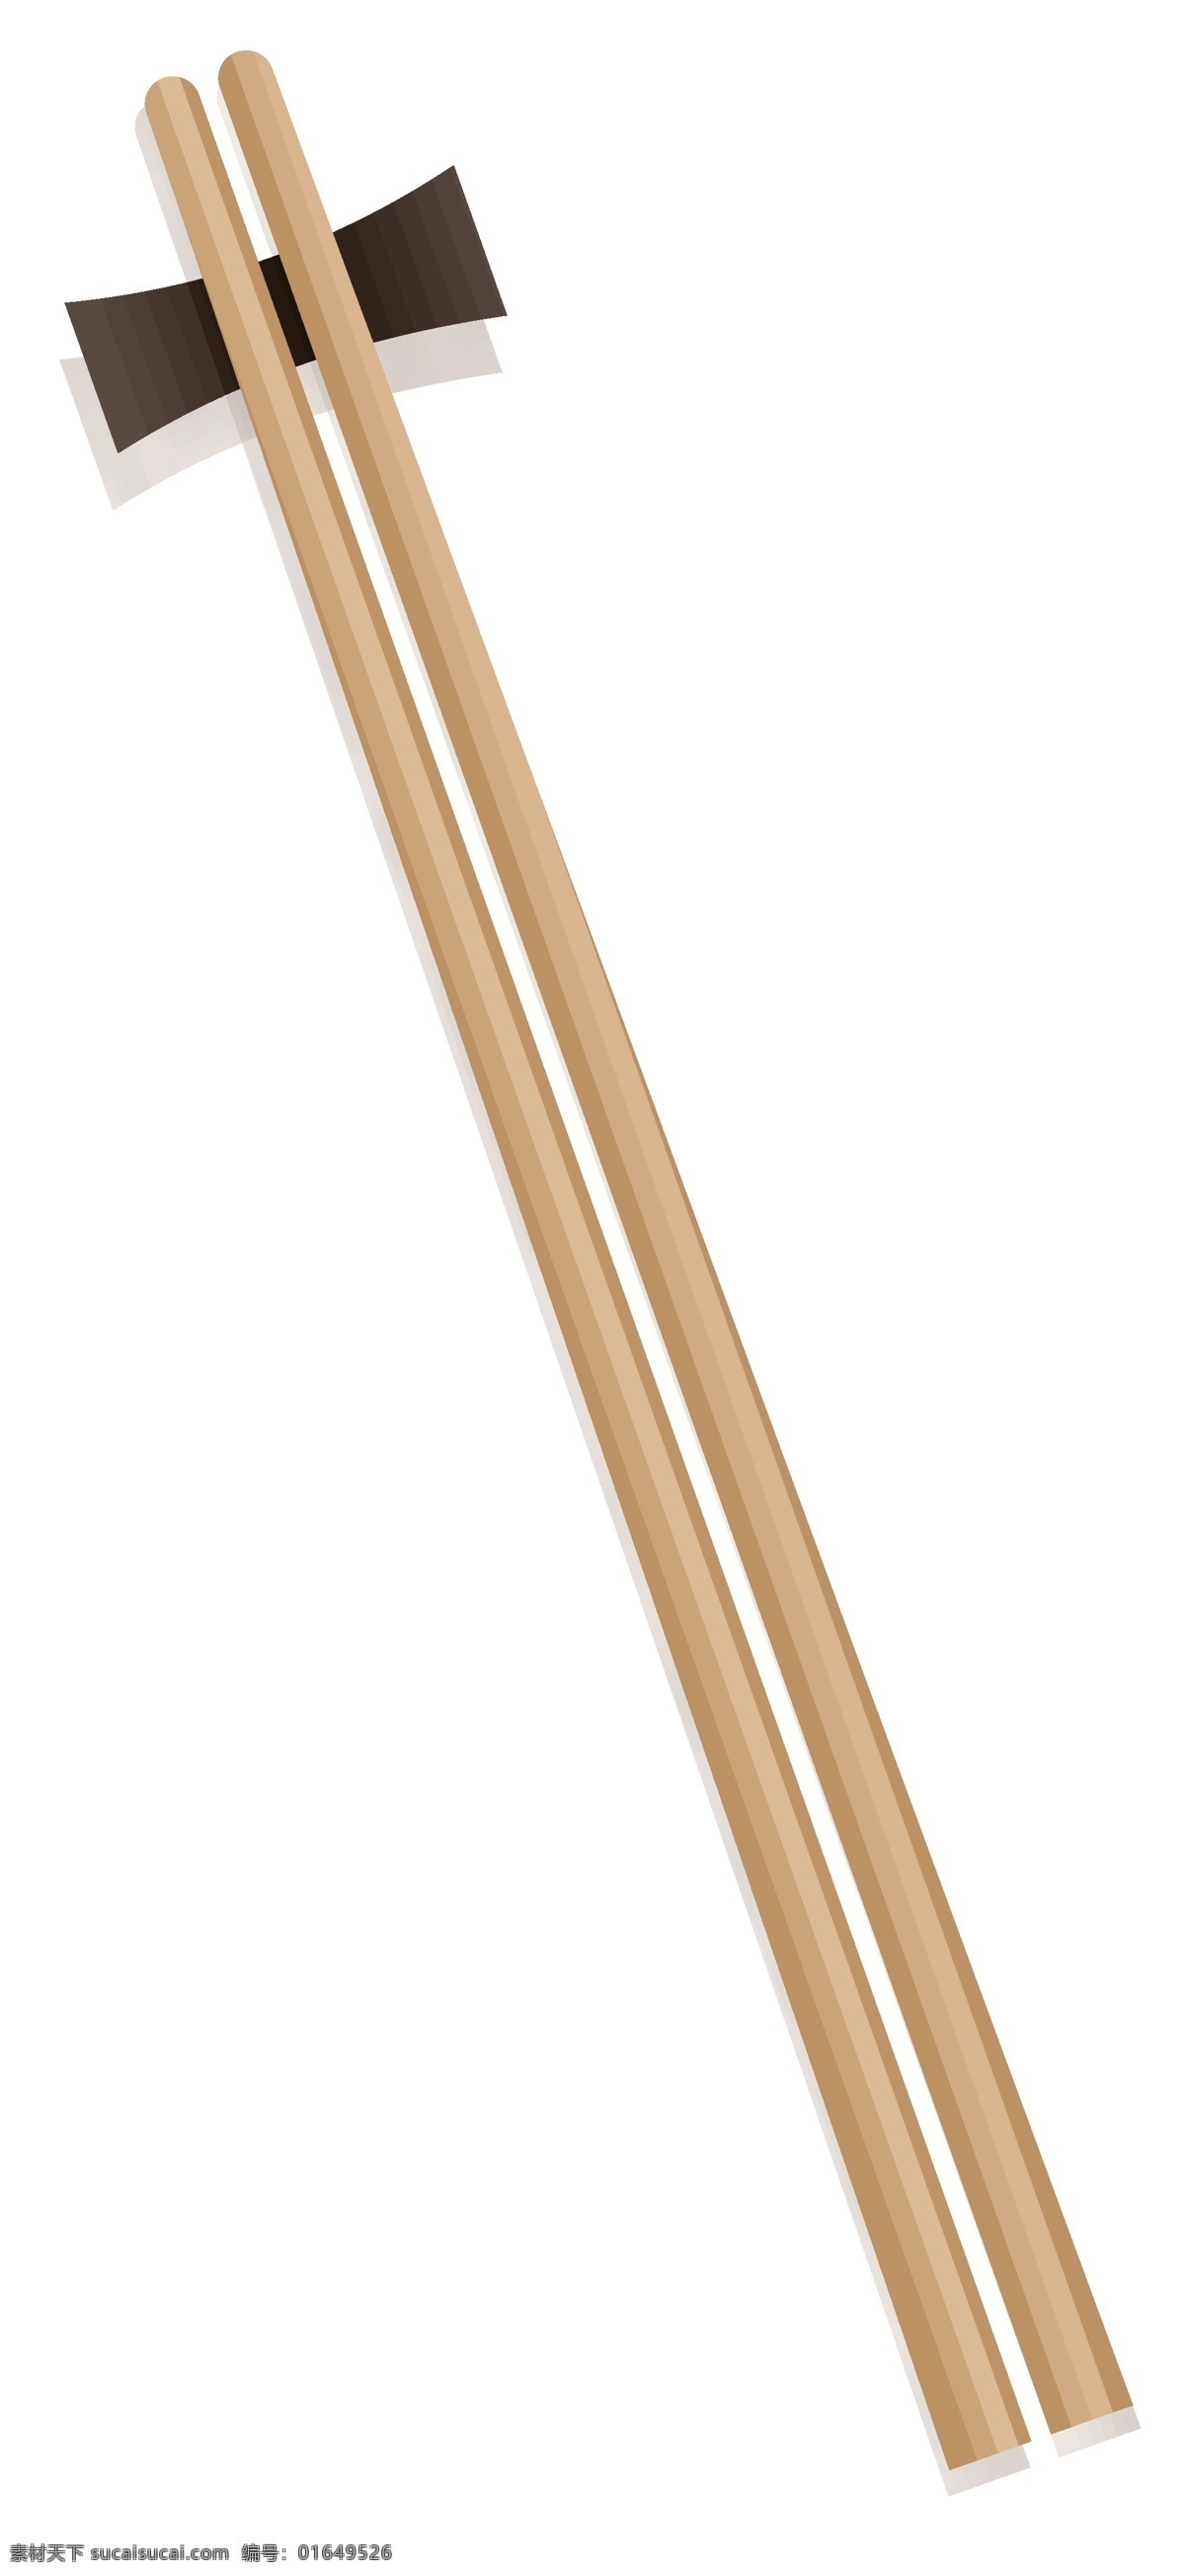 卡通 副 木 筷子 矢量 商用 元素 简约 厨具 卡通设计